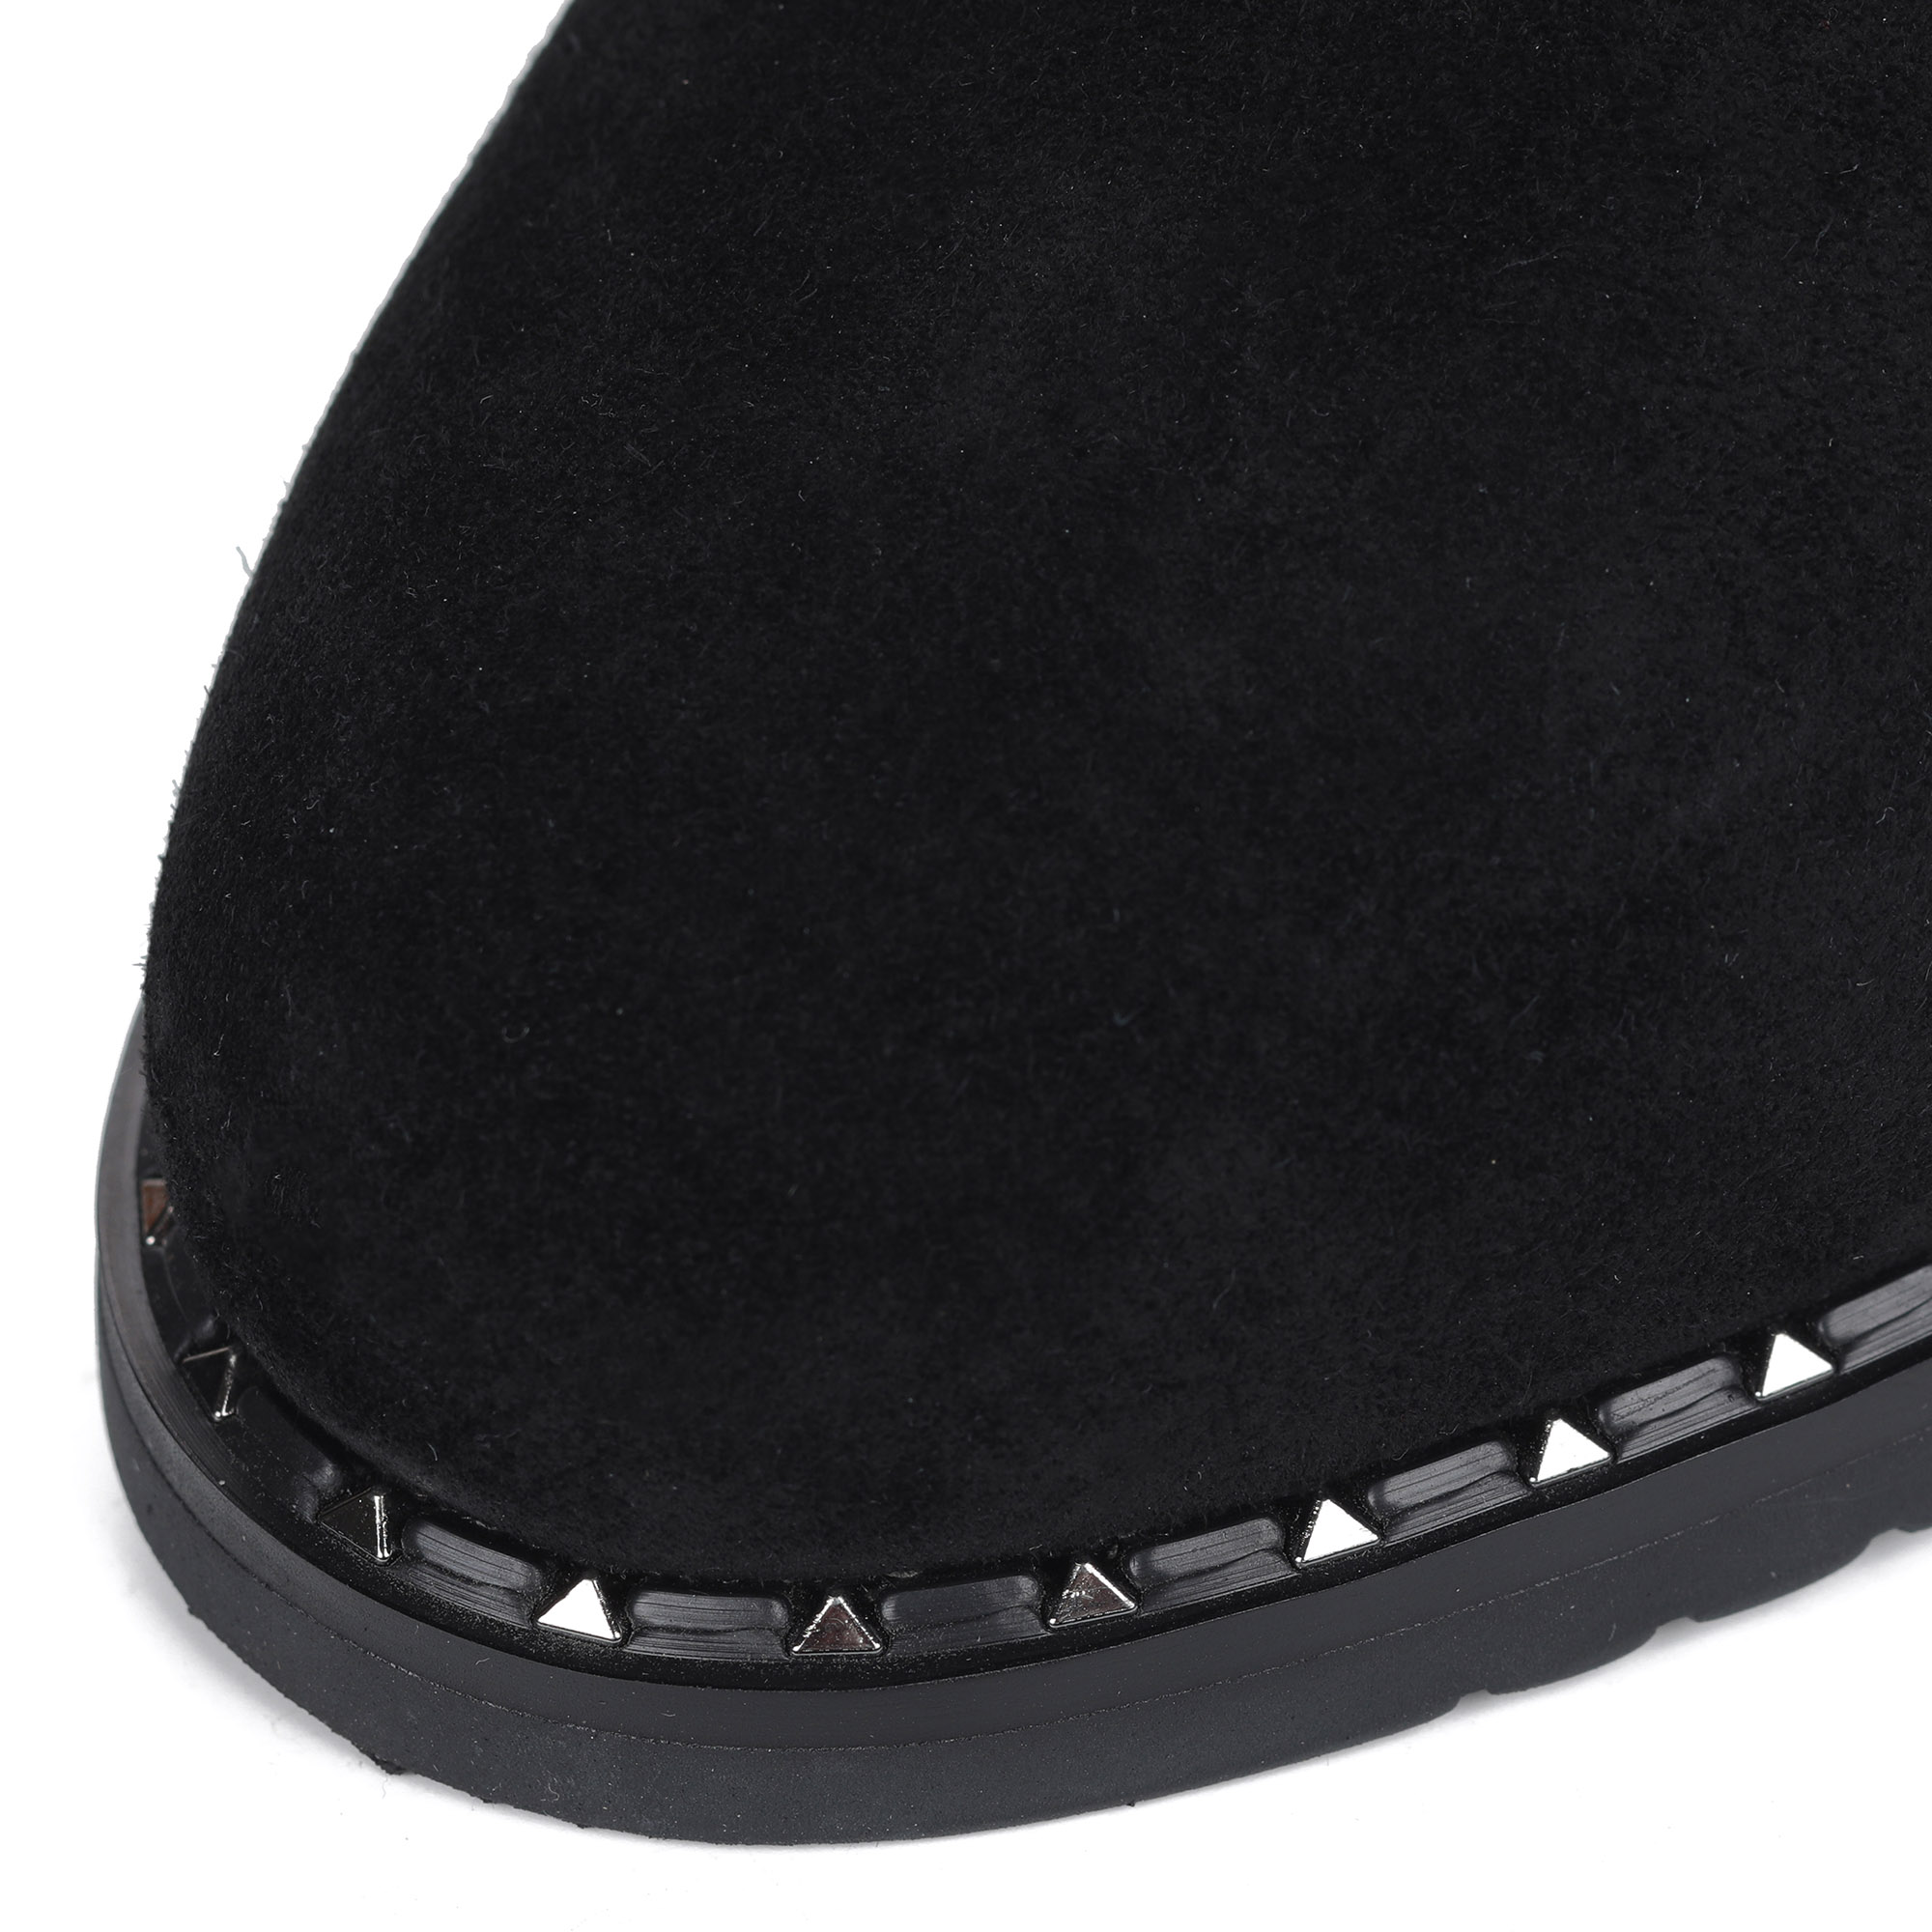 Черные велюровые сапоги на устойчивом каблуке от Respect-shoes